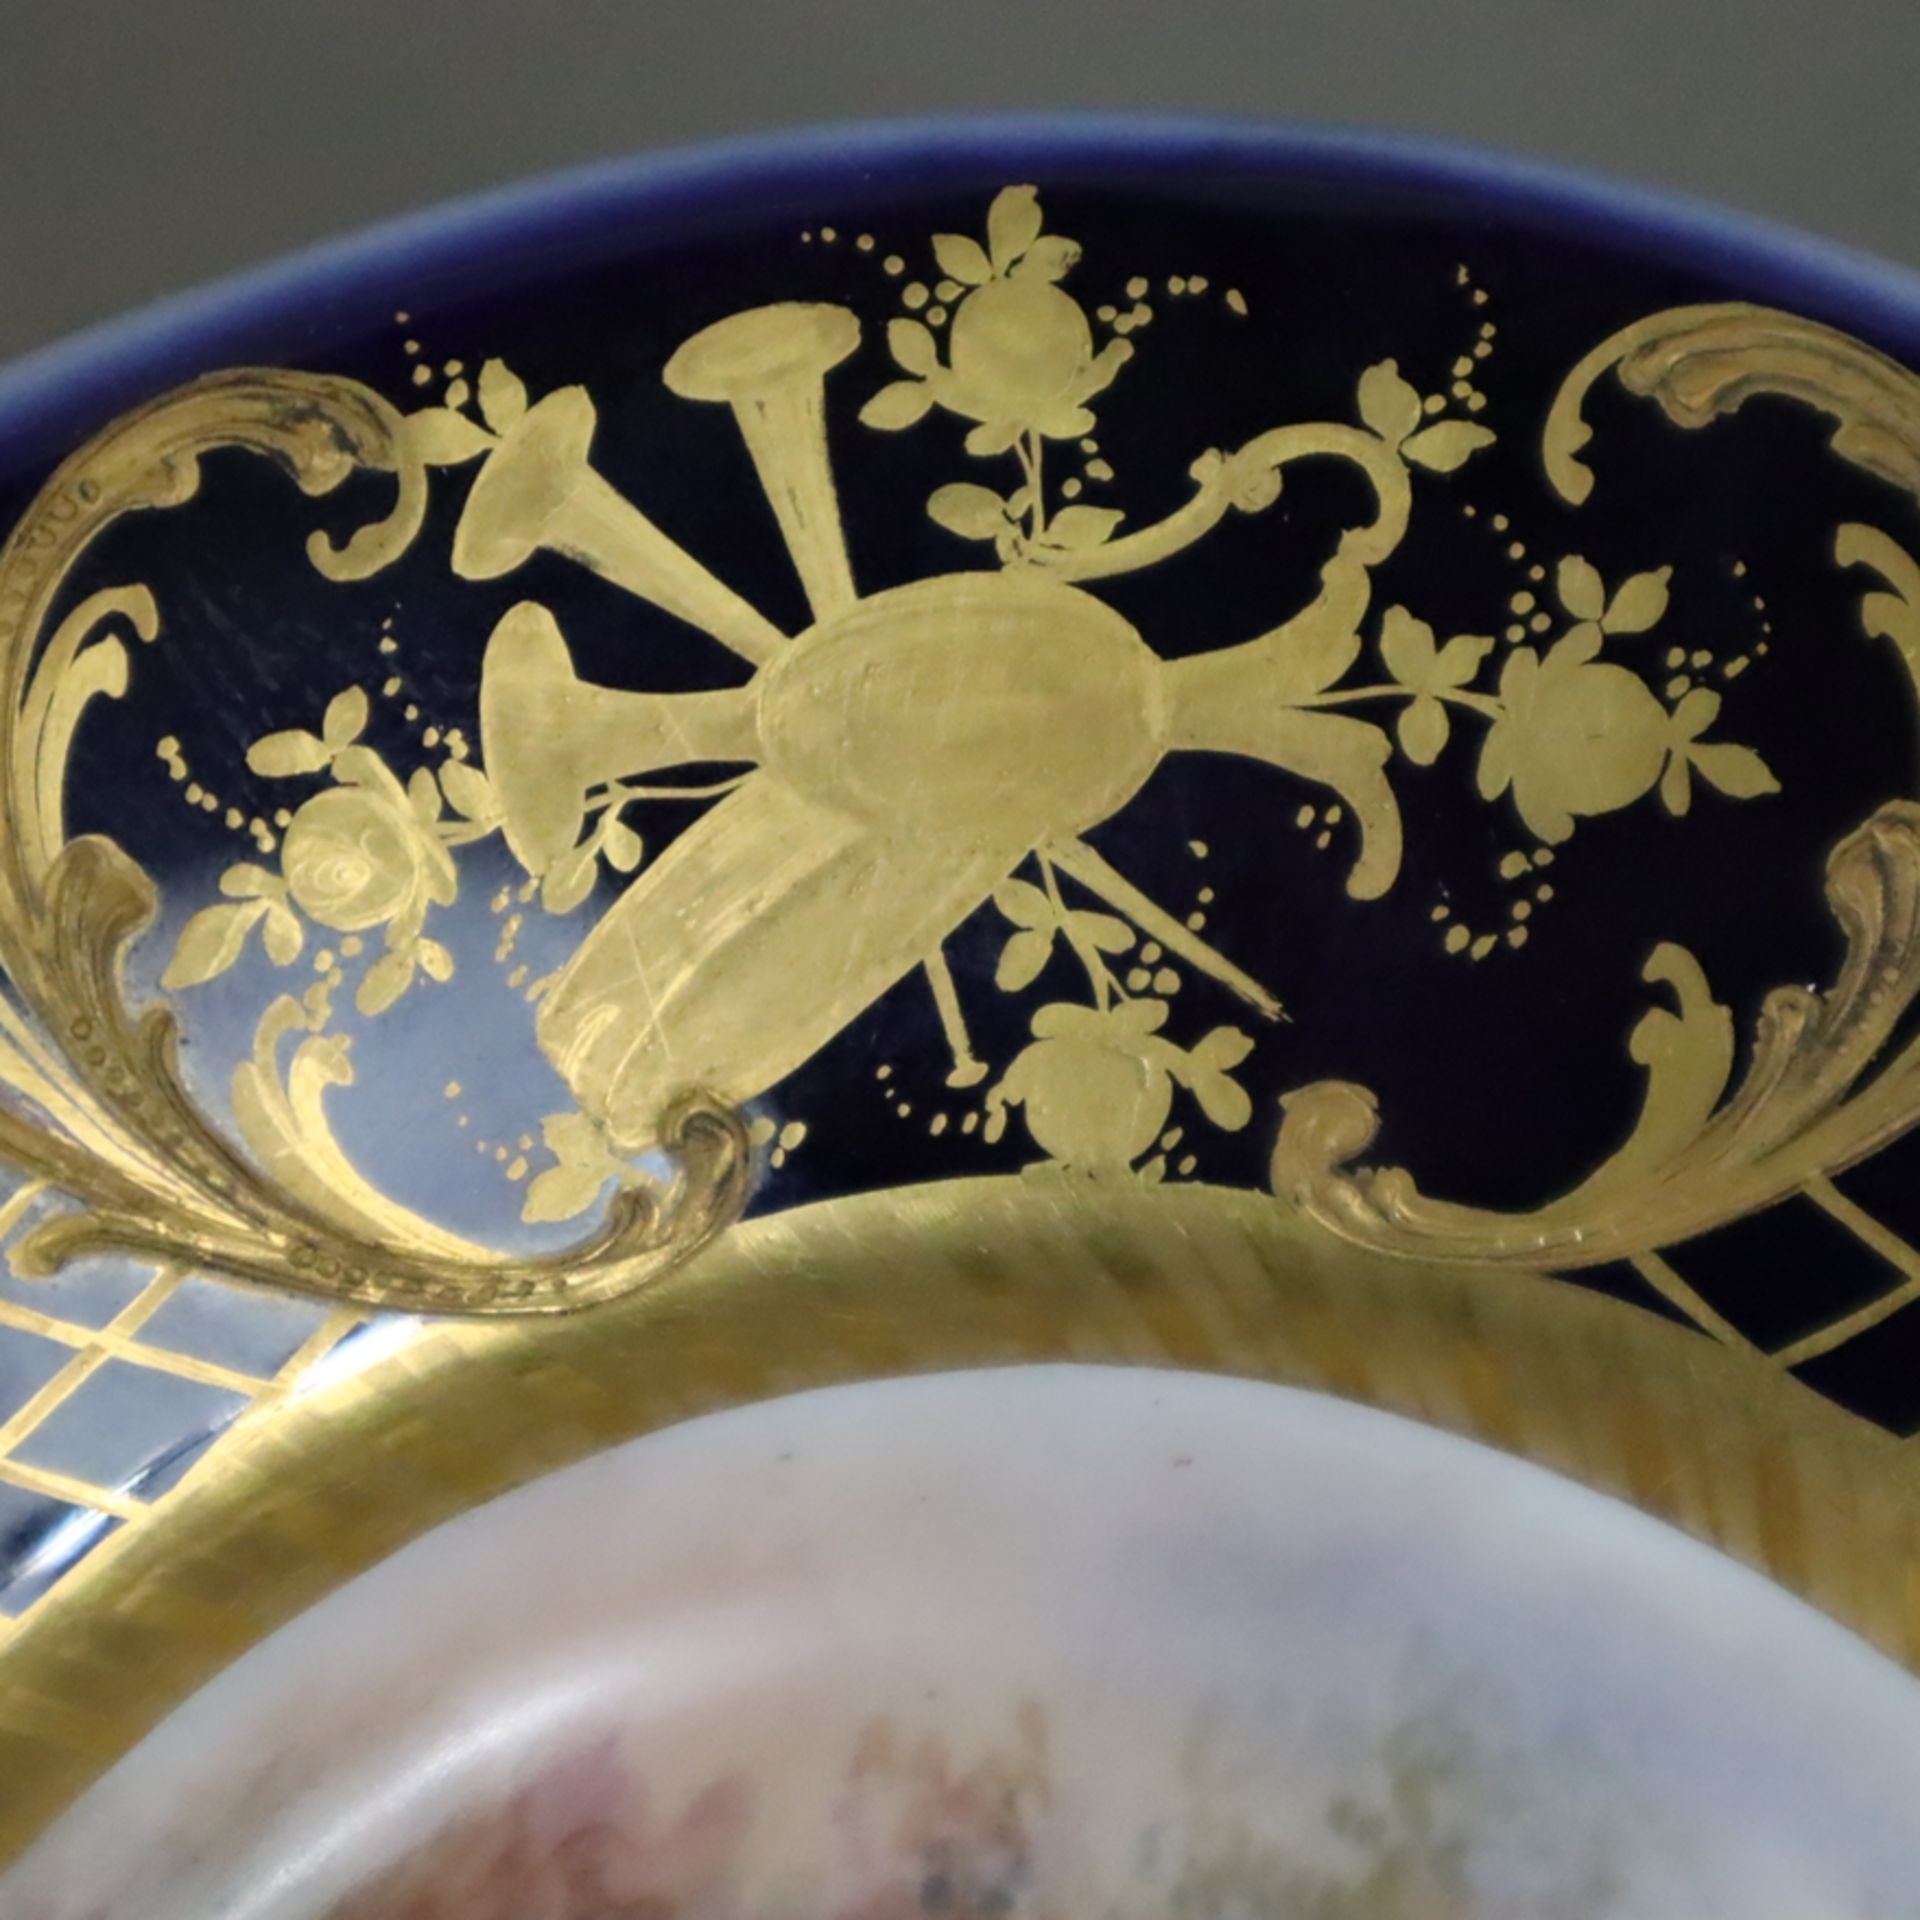 Zierplatte - Porzellan, ovale Form, im Spiegel polychrom bemalte galante Szene, signiert "Beranger" - Bild 8 aus 12